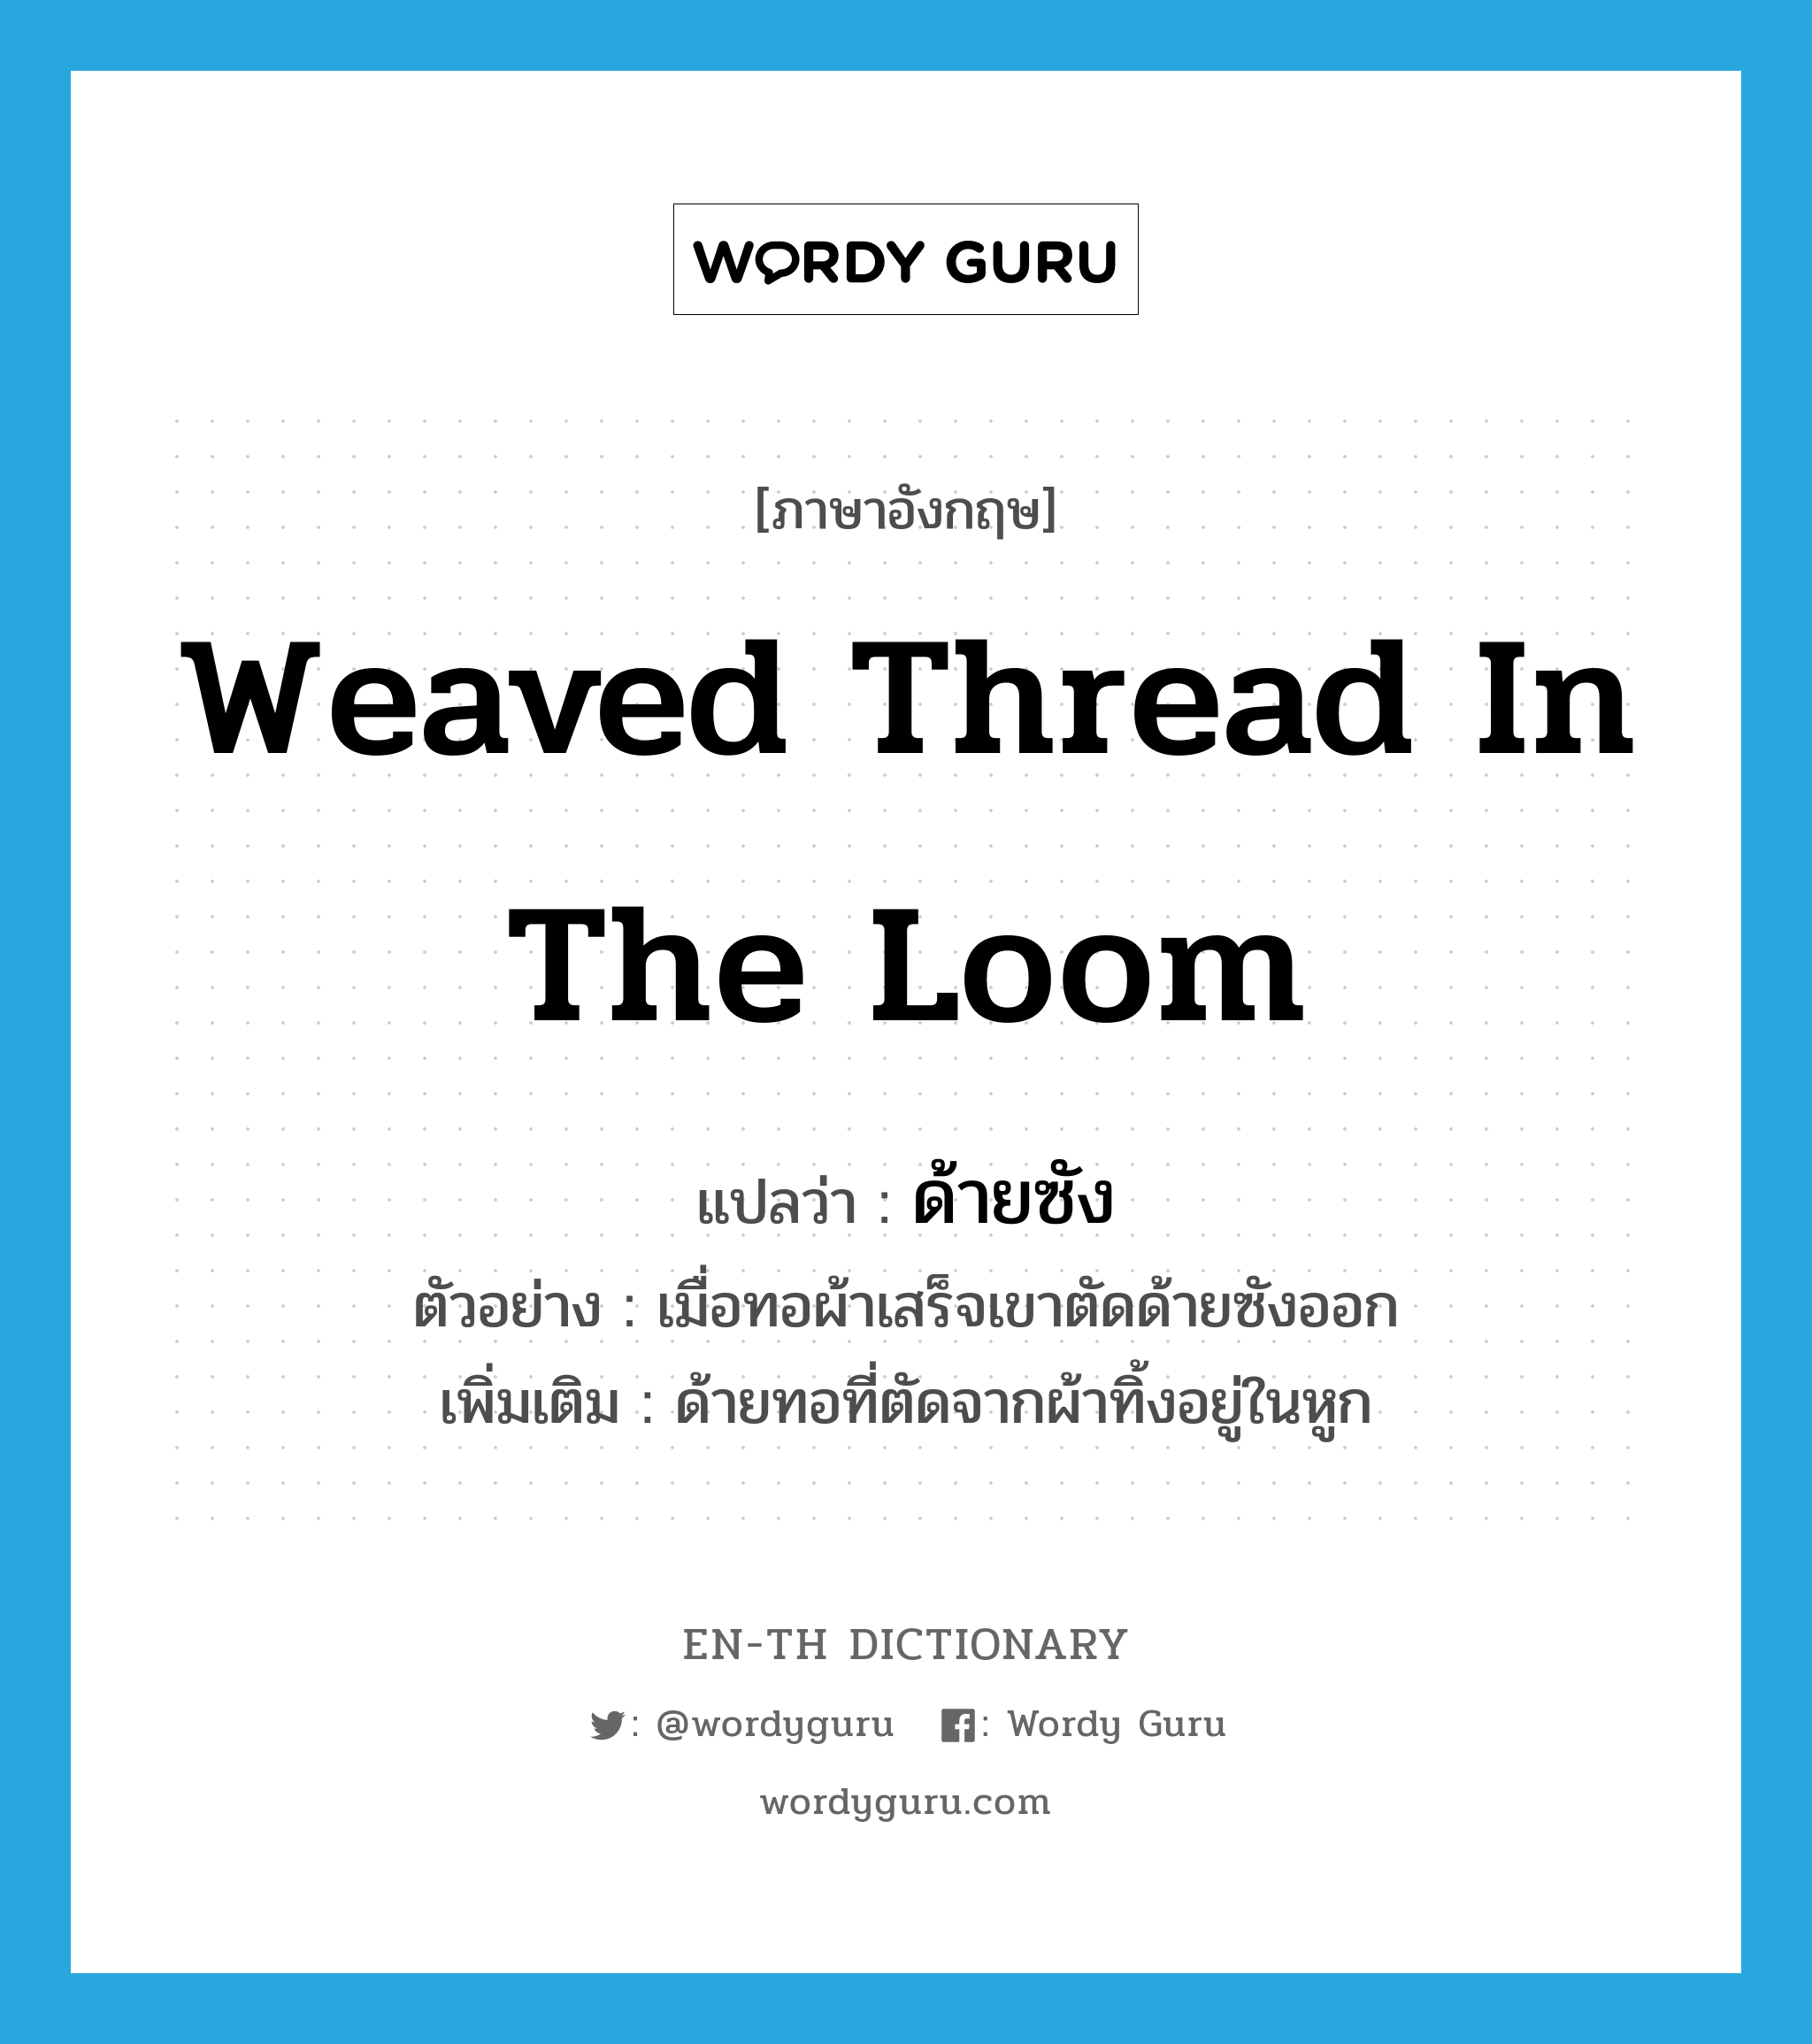 weaved thread in the loom แปลว่า?, คำศัพท์ภาษาอังกฤษ weaved thread in the loom แปลว่า ด้ายซัง ประเภท N ตัวอย่าง เมื่อทอผ้าเสร็จเขาตัดด้ายซังออก เพิ่มเติม ด้ายทอที่ตัดจากผ้าทิ้งอยู่ในหูก หมวด N